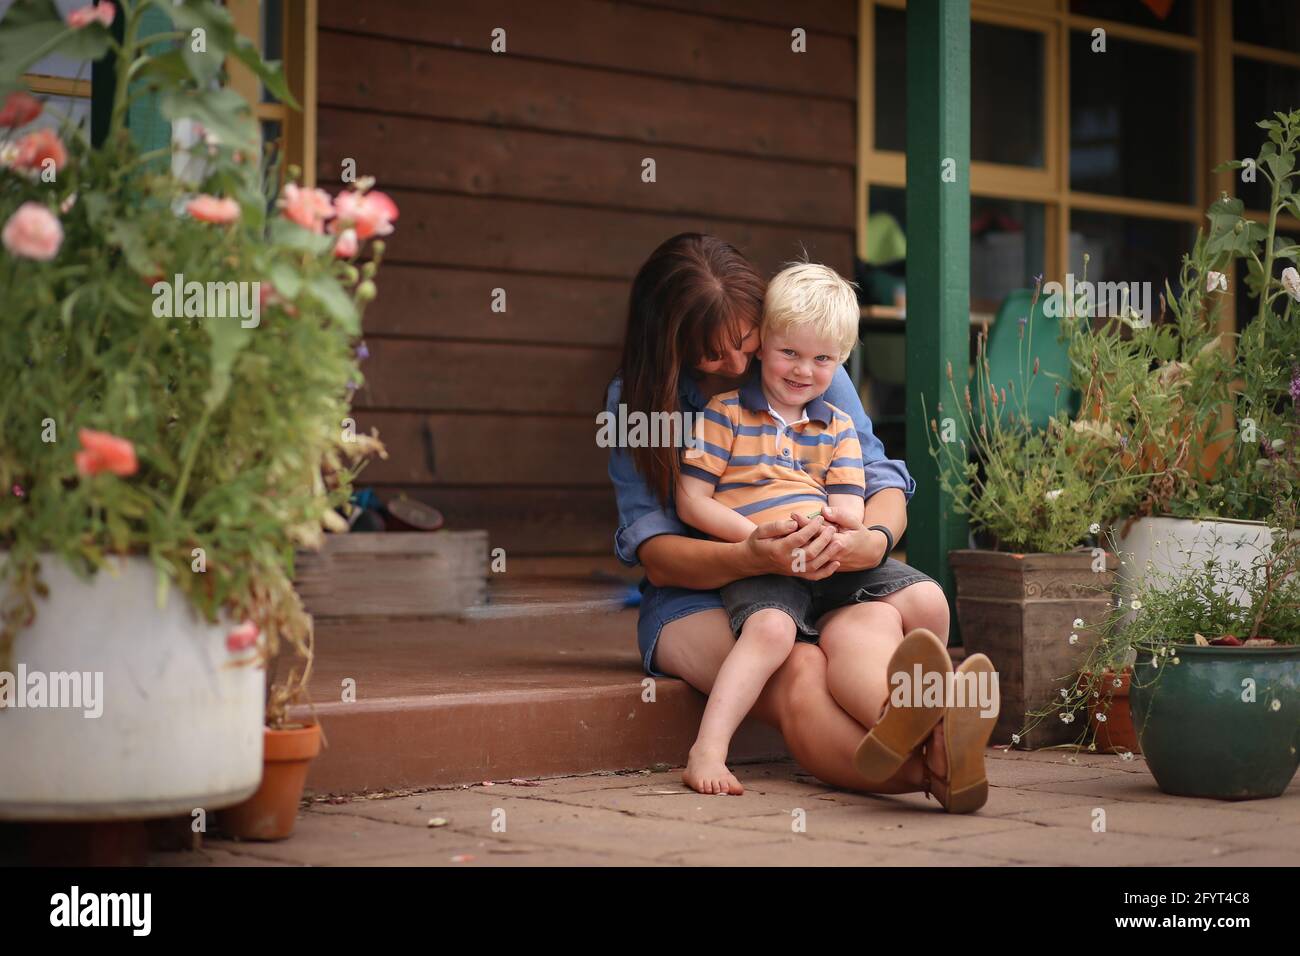 Eine glückliche Mutter mit einem kleinen Jungen, der auf einem sitzt Steinstufen Stockfoto